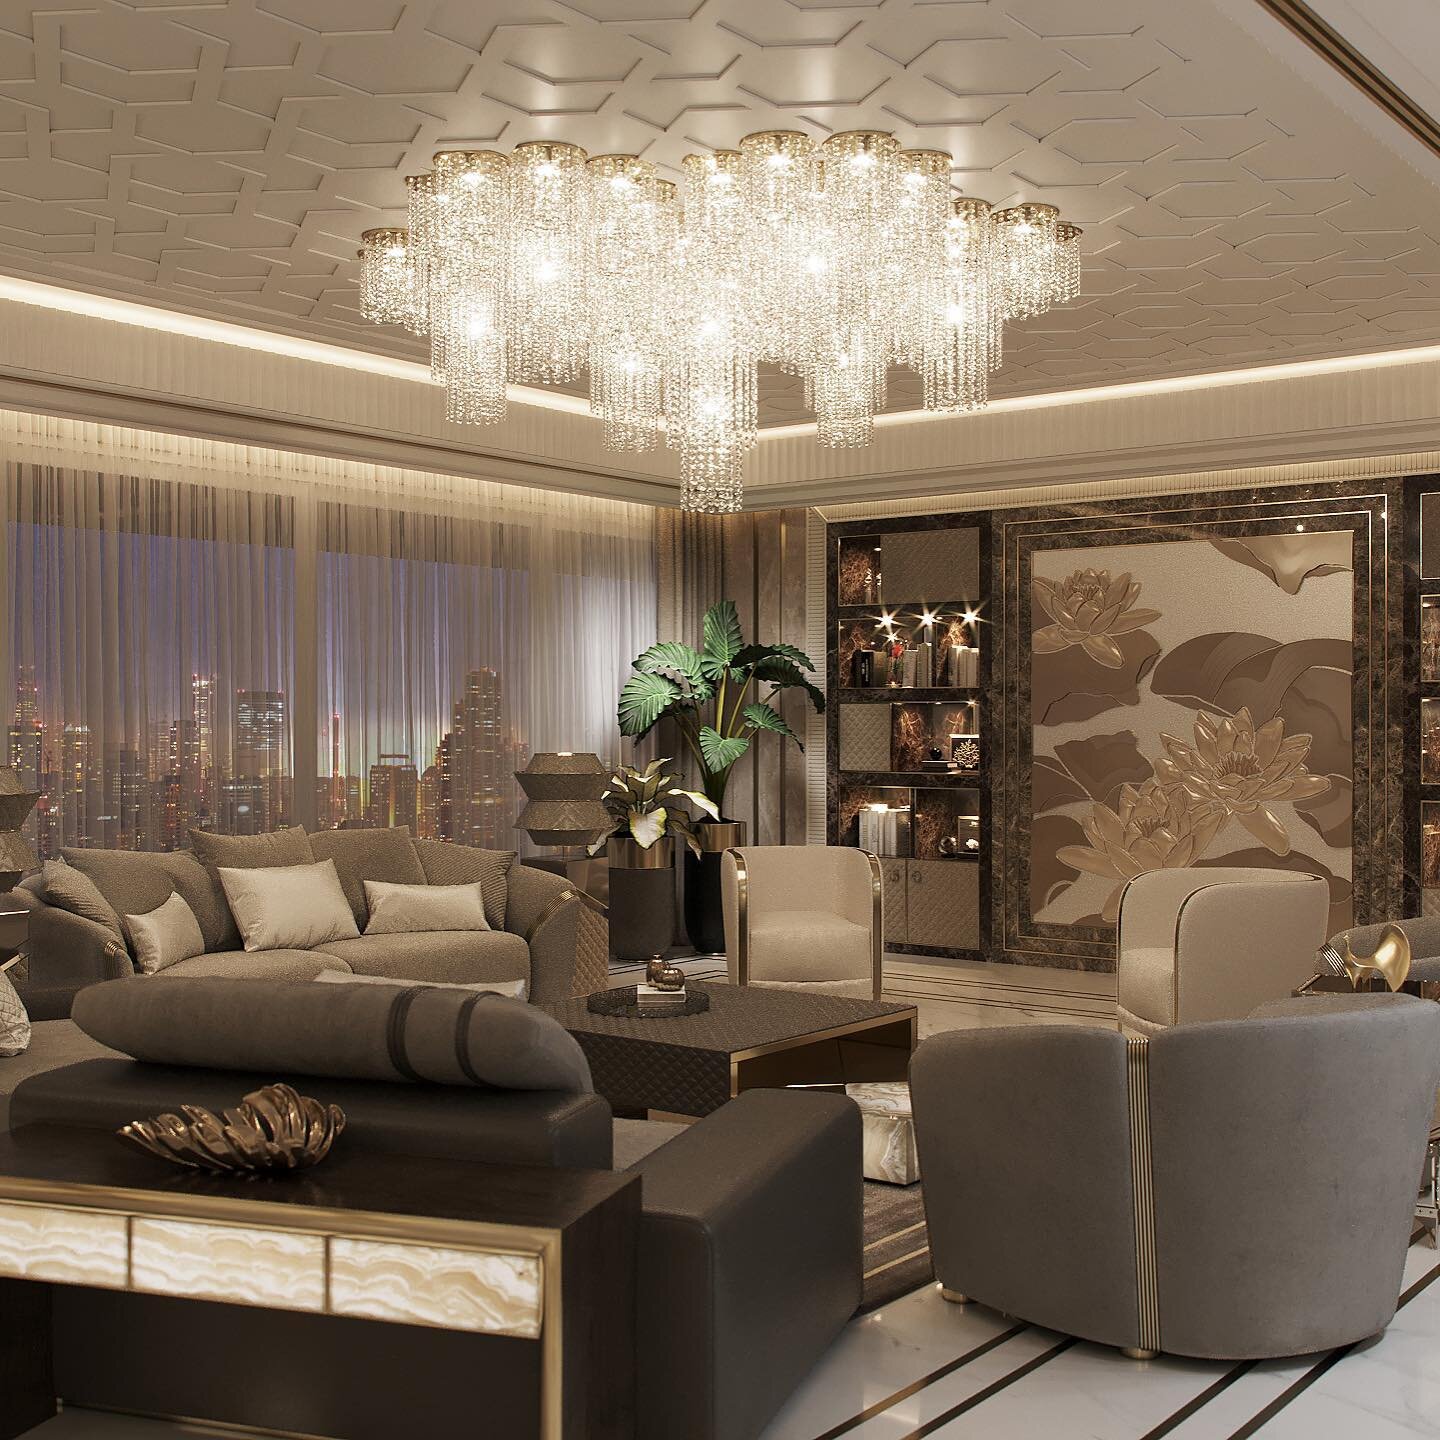 Design by @life_arch
Большая гостиная в красивом городе!
~
Large living room in a beautiful city!